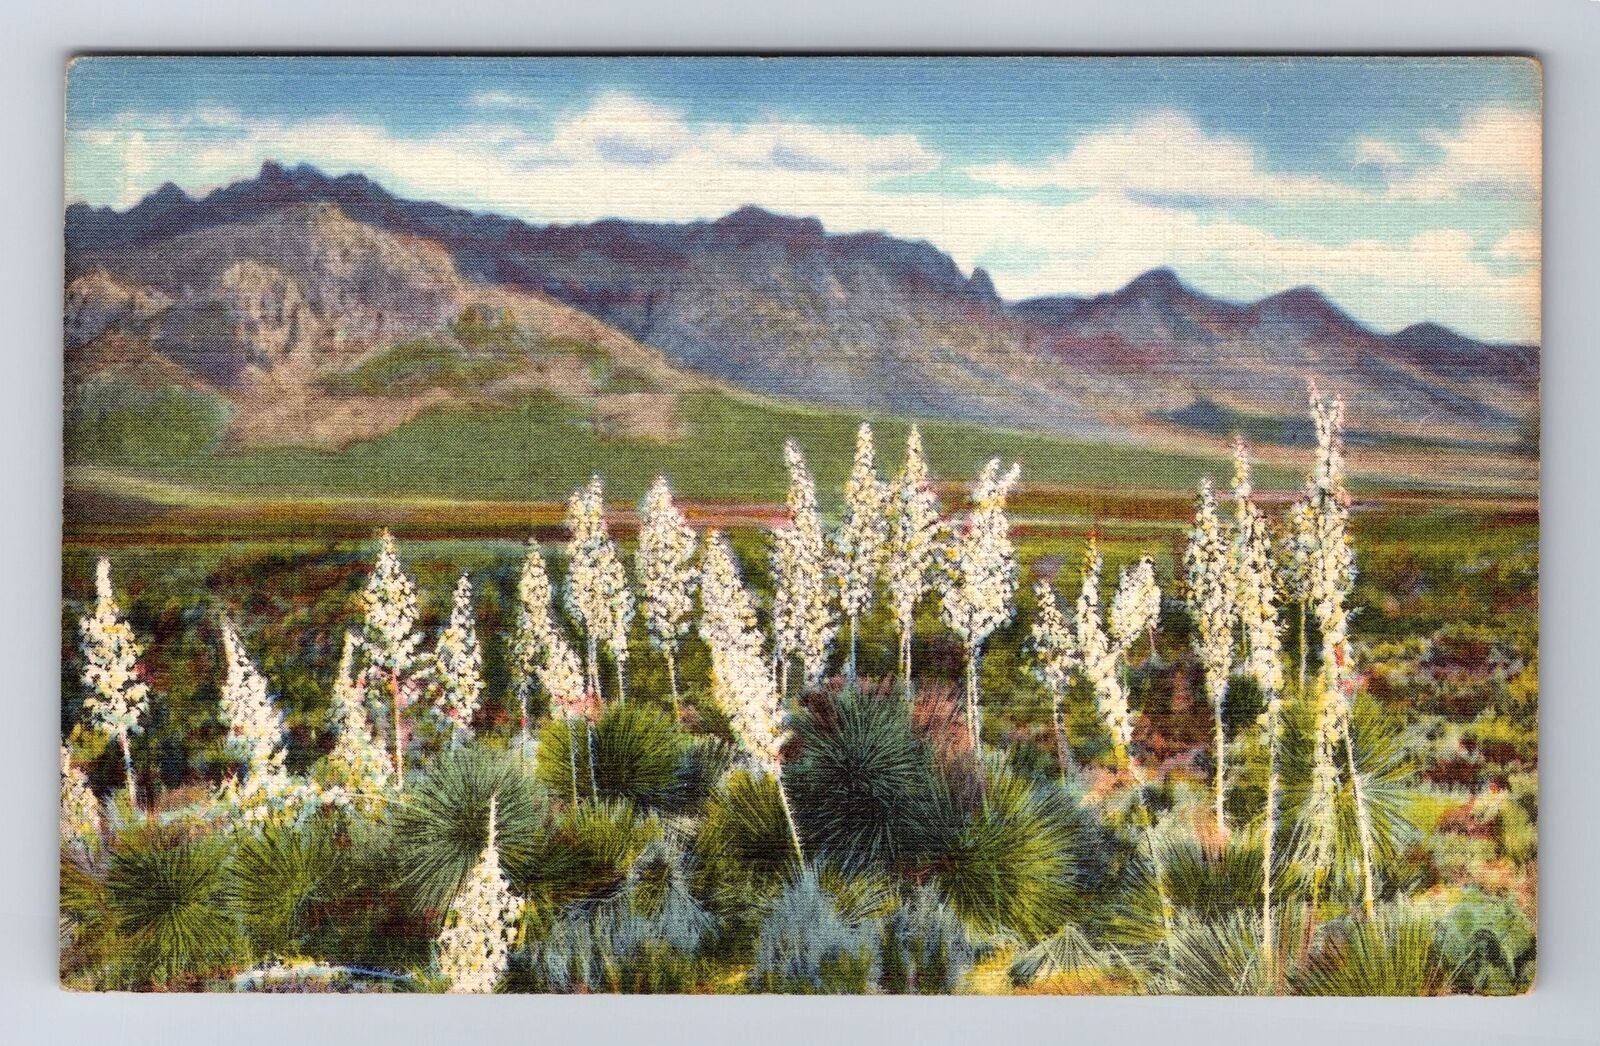 NM-New Mexico, Florida Mountains, Southern New Mexico, Vintage Postcard